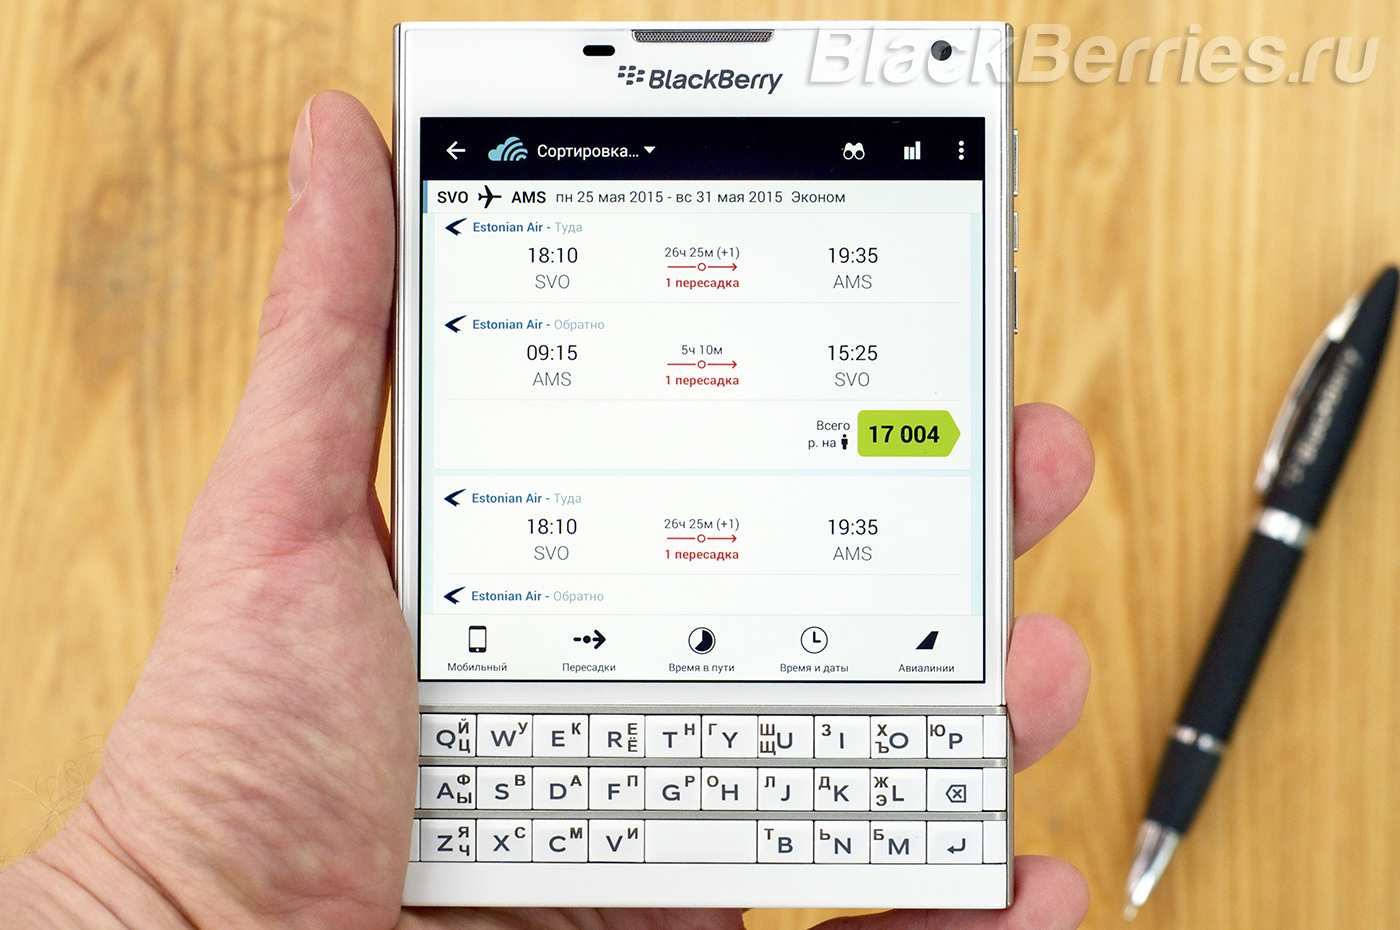 BlackBerry-Passport-App-23-05-05